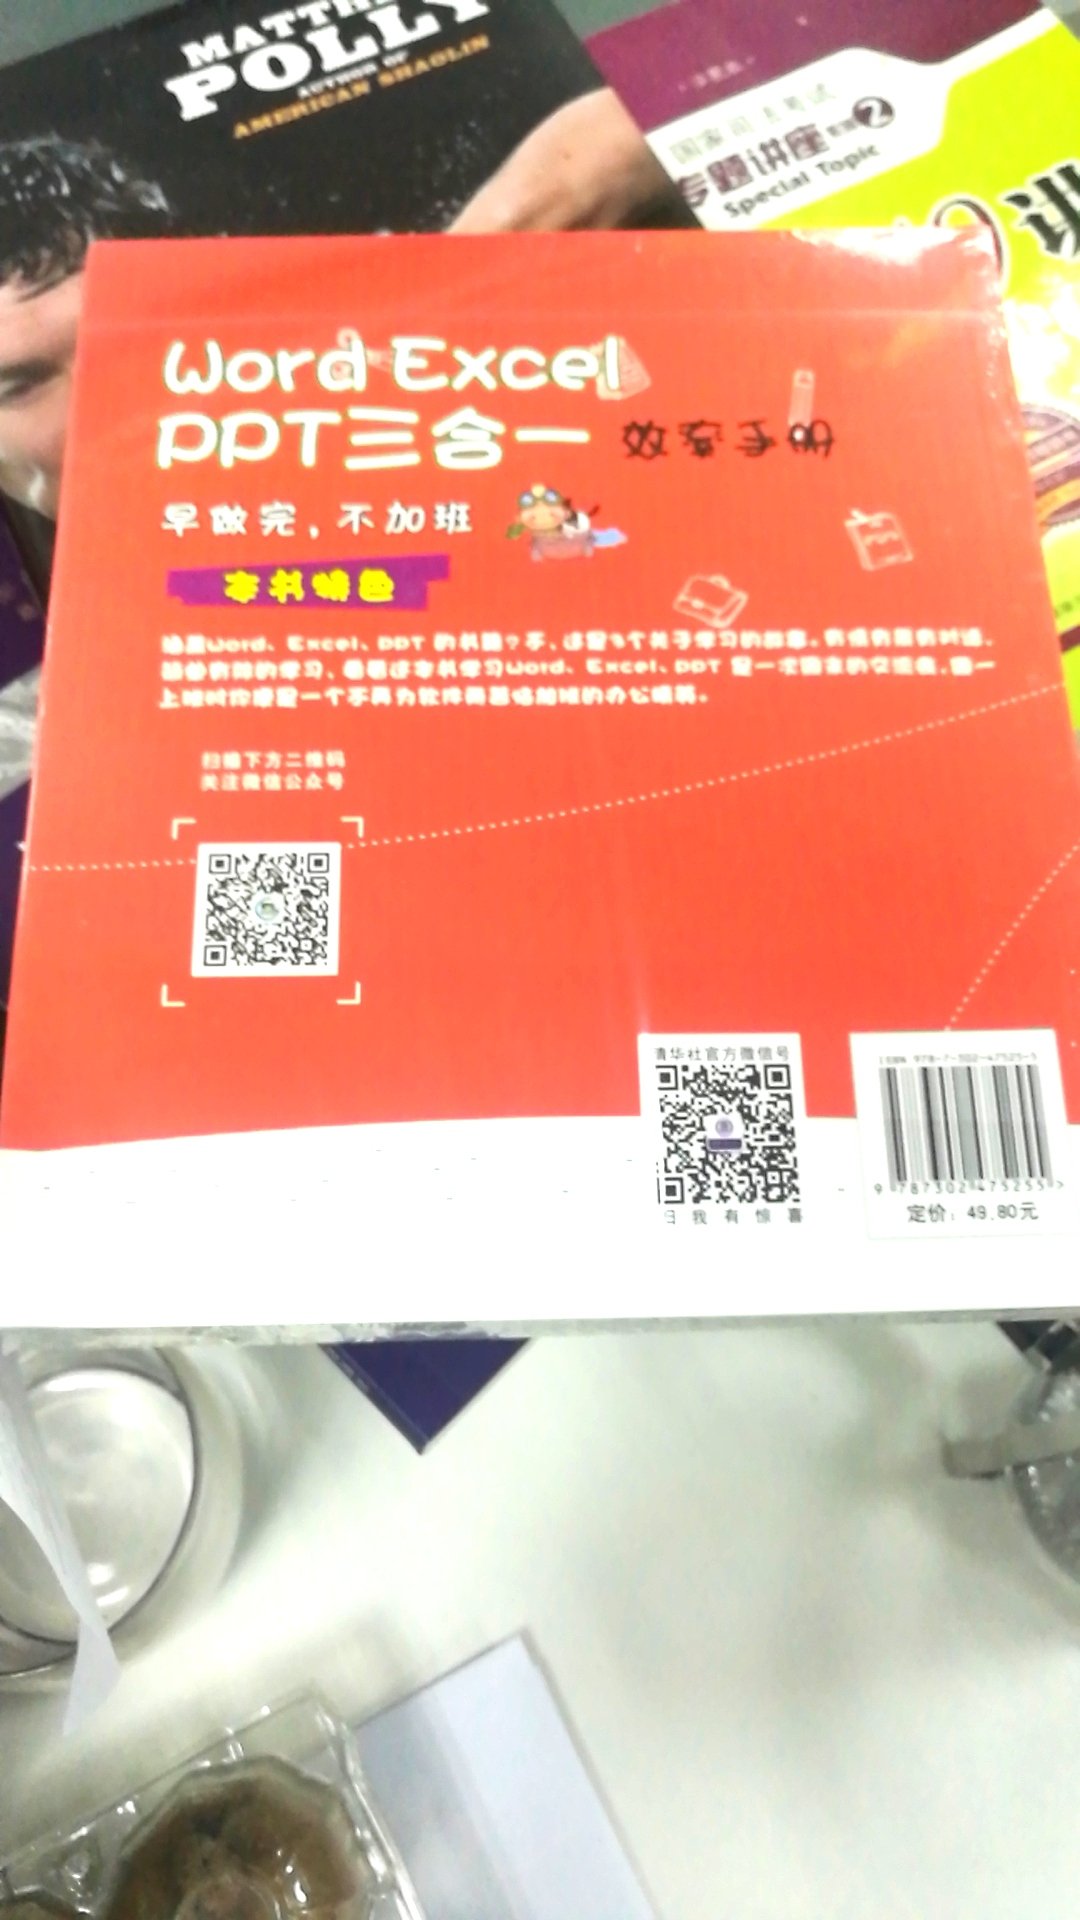 清华大学出版社出版的三合一效率手册  印数5000册 稀有的宝贝 三个年轻人写的 中国合伙人